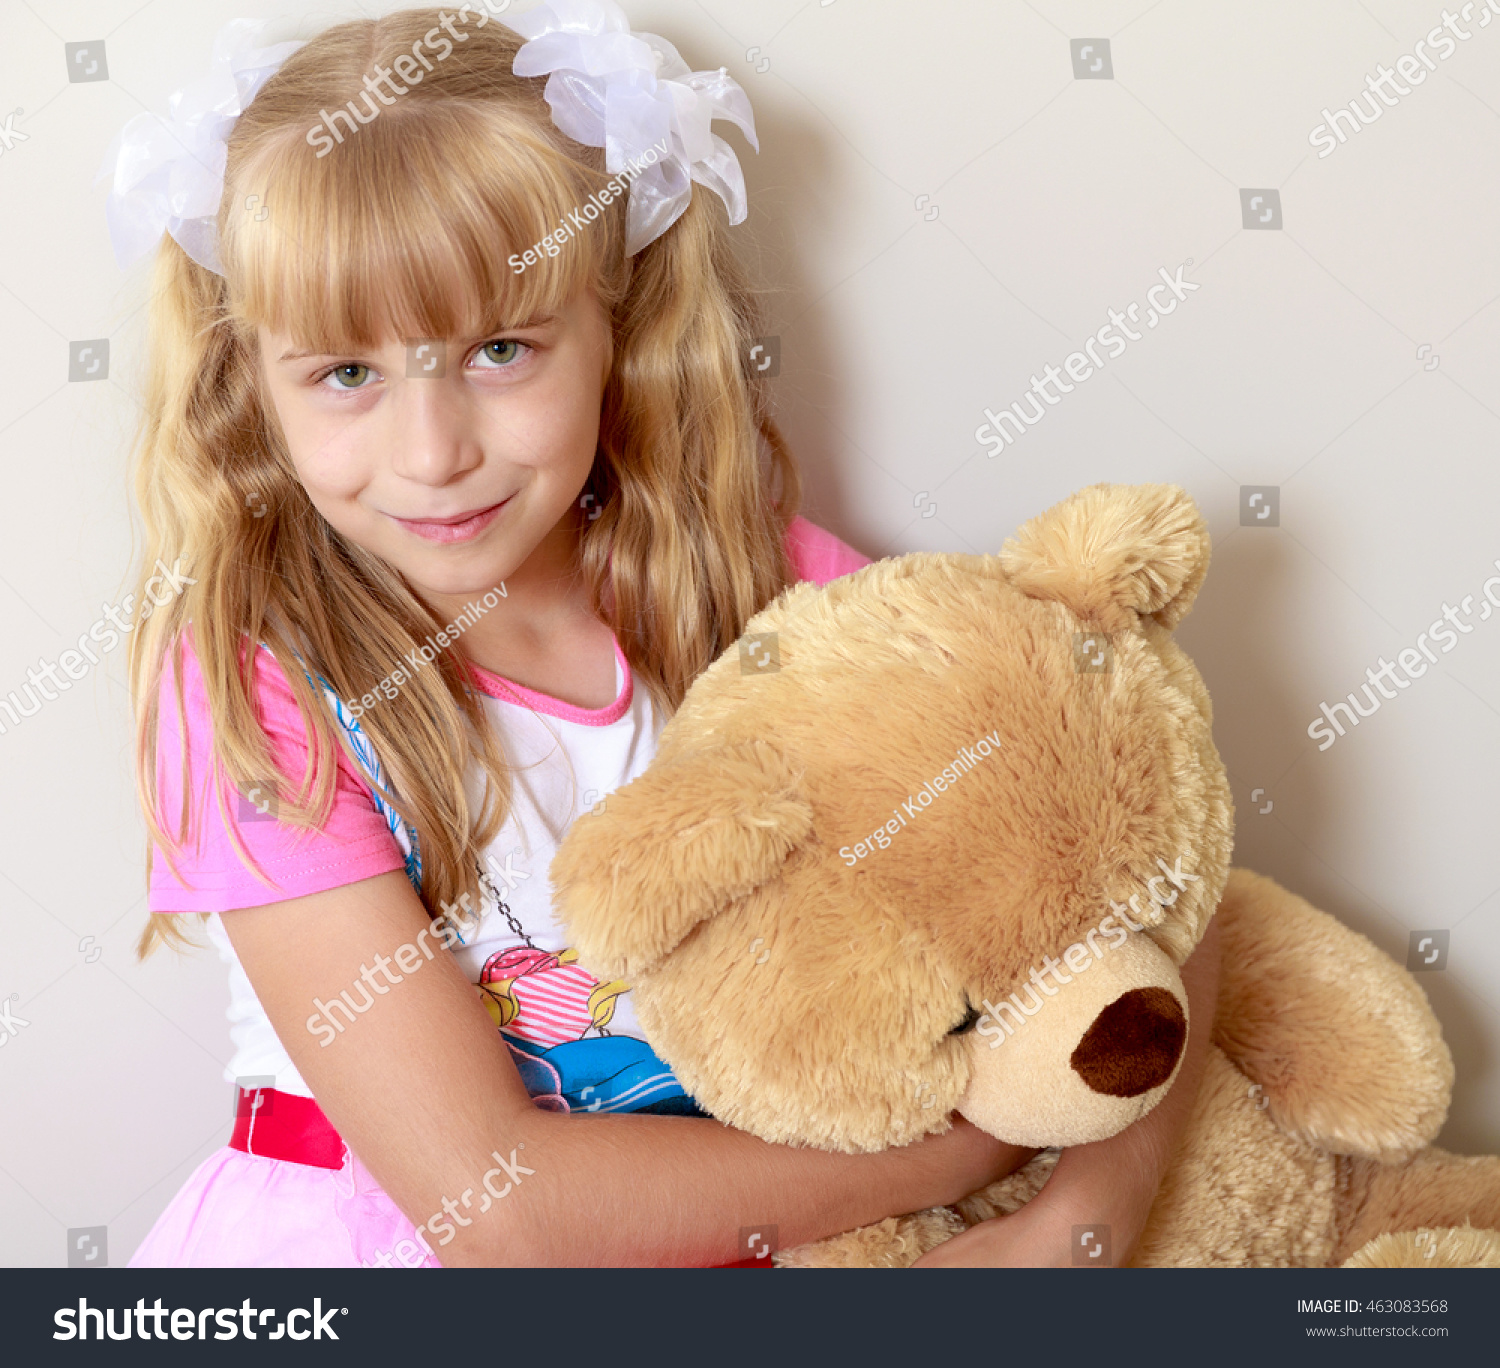 girl with a teddy bear